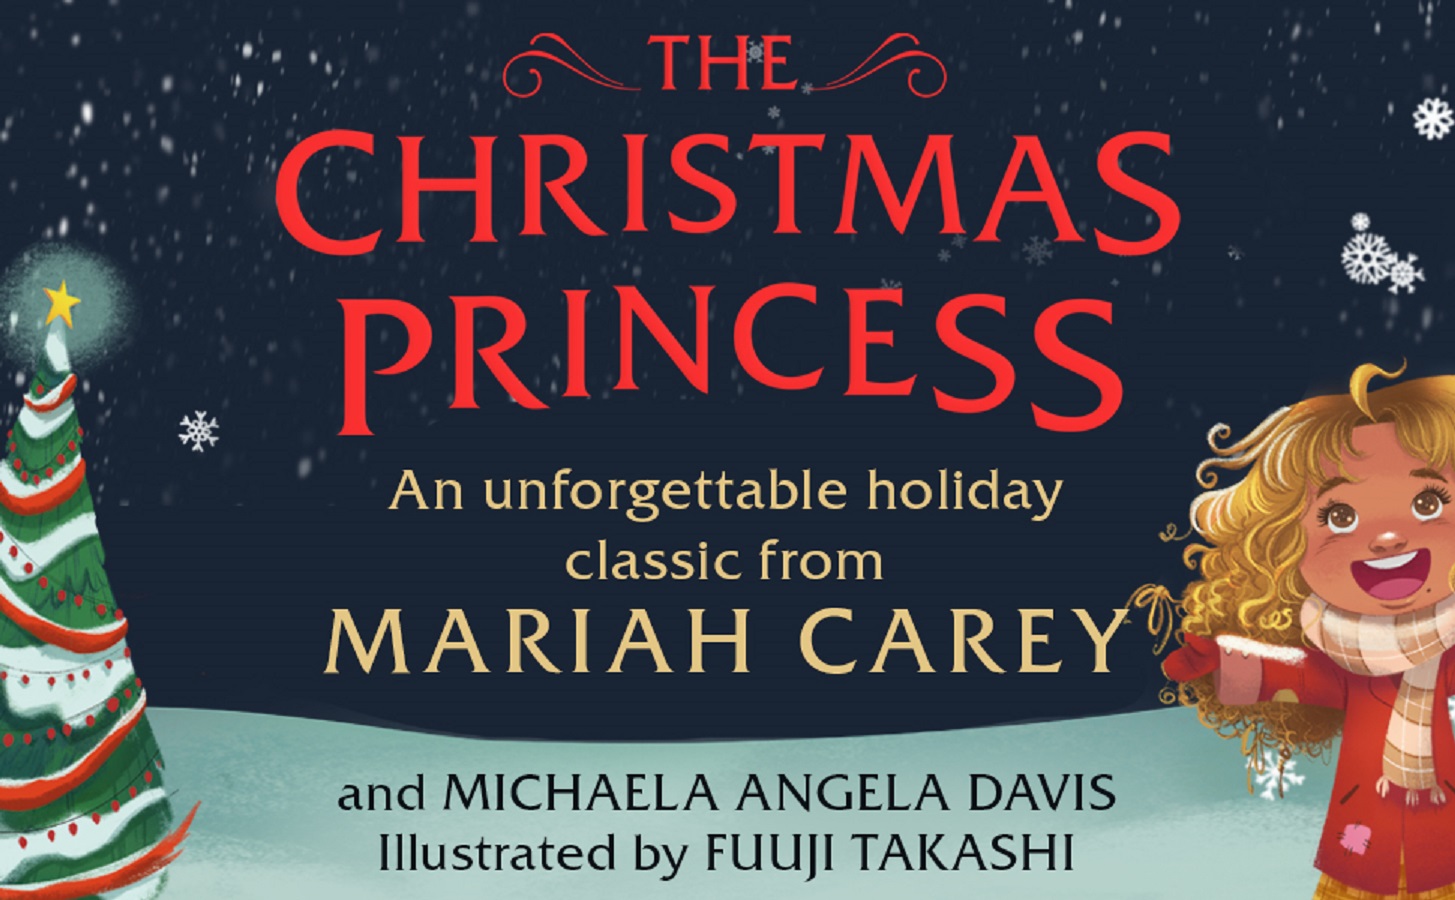 Το νέο βιβλίο της Mariah Carey για τα Χριστούγεννα